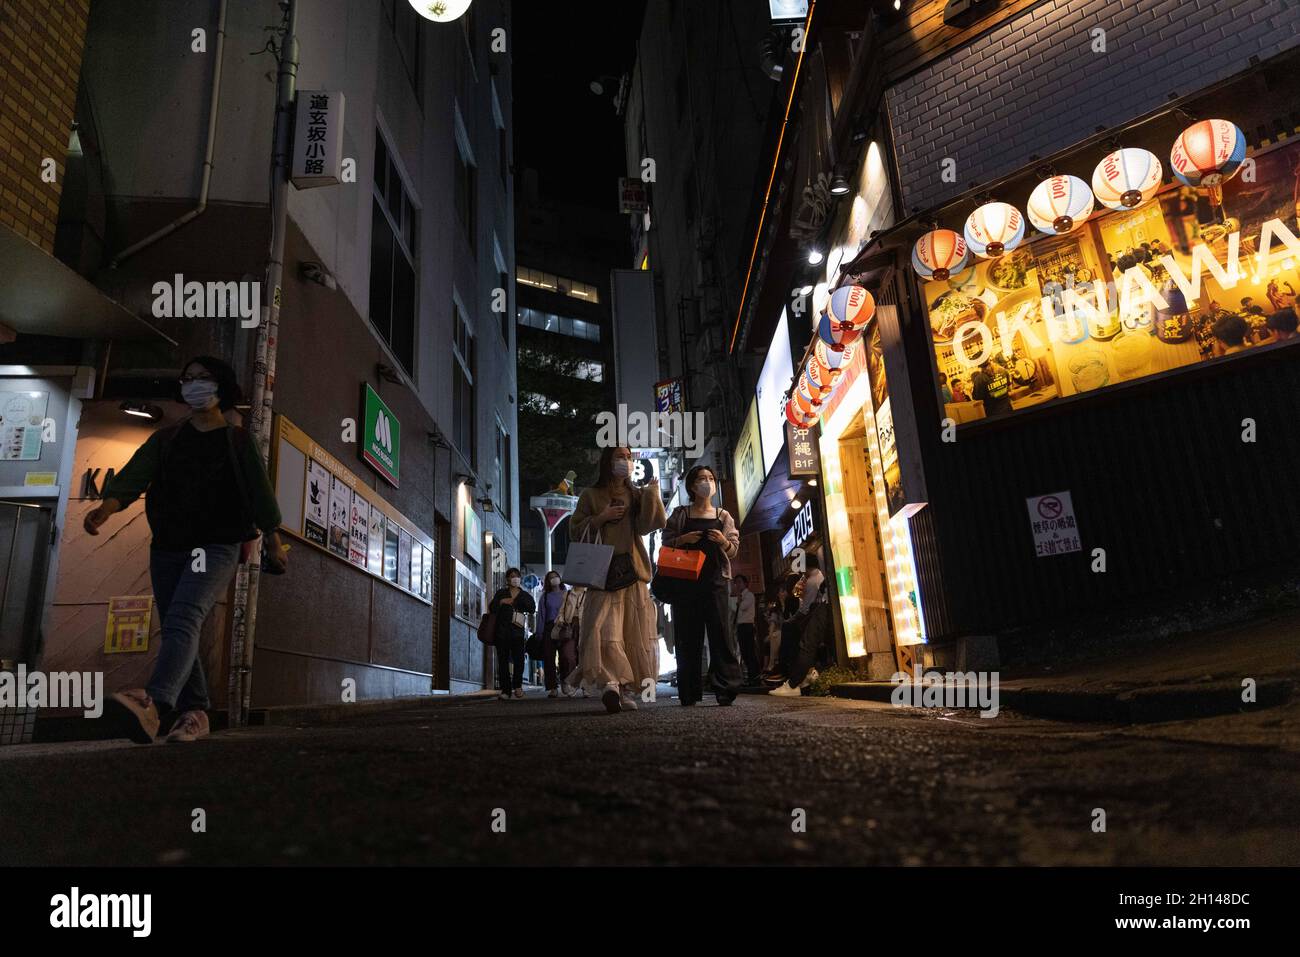 Maskierte Menschen gehen durch eine Gasse im Shibuya-Viertel in Tokio.das Nachtleben im Unterhaltungsviertel von Tokio Shibuya normalisiert sich wieder, nachdem der mit dem Coronavirus verbundene Ausnahmezustand in Tokio aufgehoben wurde. Restaurants und Bars können abends geöffnet sein und wieder Alkohol servieren. (Foto von Stanislav Kogiku / SOPA Images/Sipa USA) Stockfoto